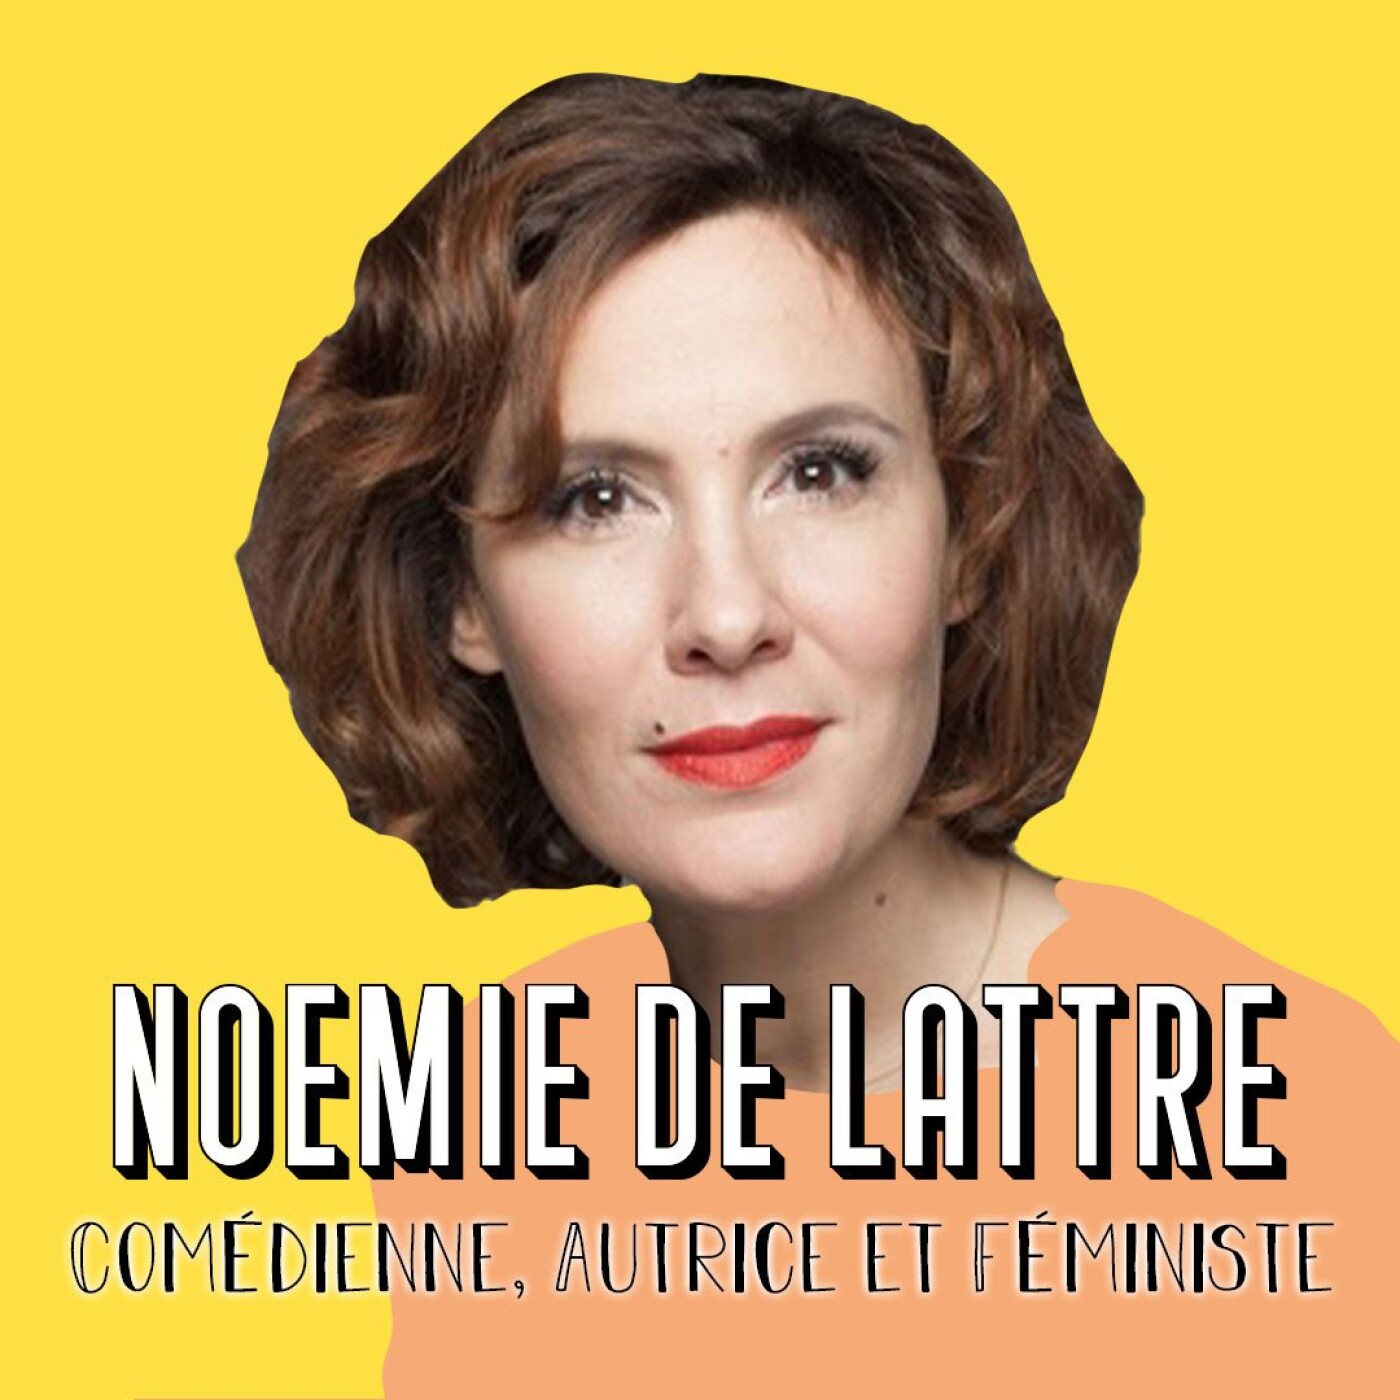 Noémie De Lattre, Comédienne, Autrice et Féministe - Se créer sa propre identité [BEST-OF]